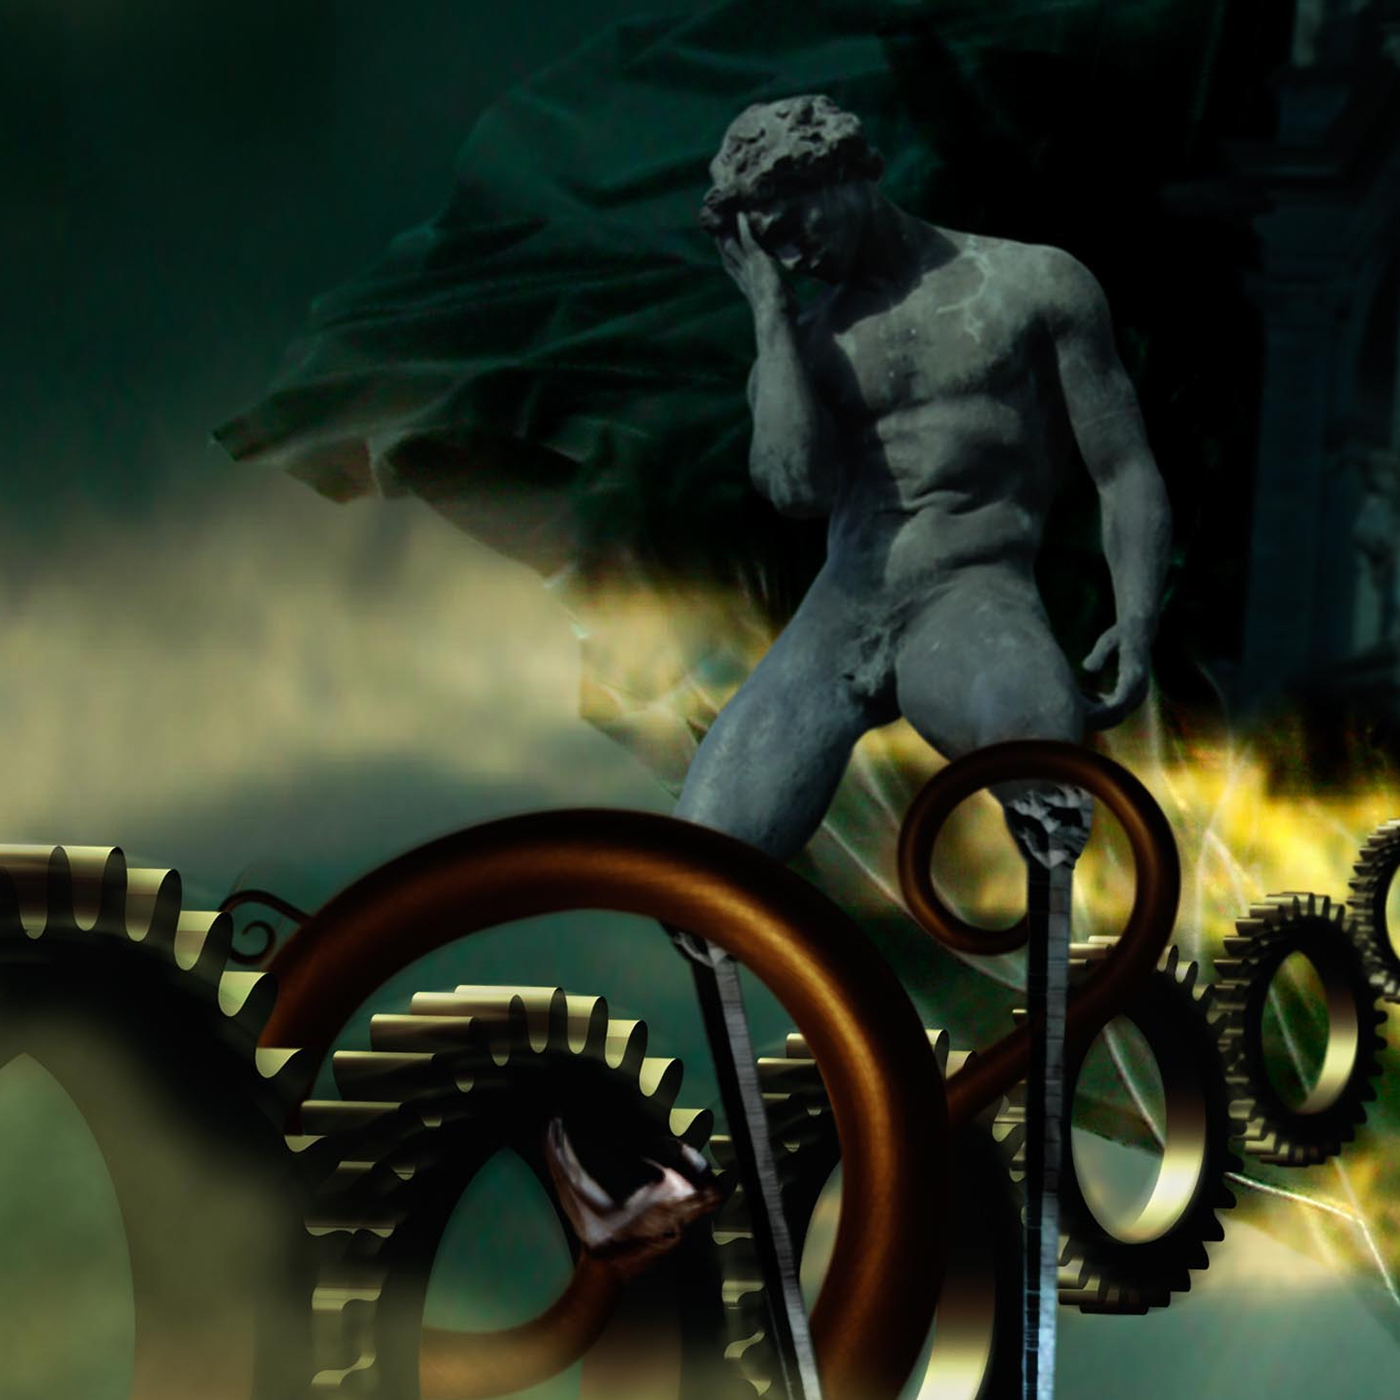 serpent mythologie religion dieu Combat ange brebis heros engrenage